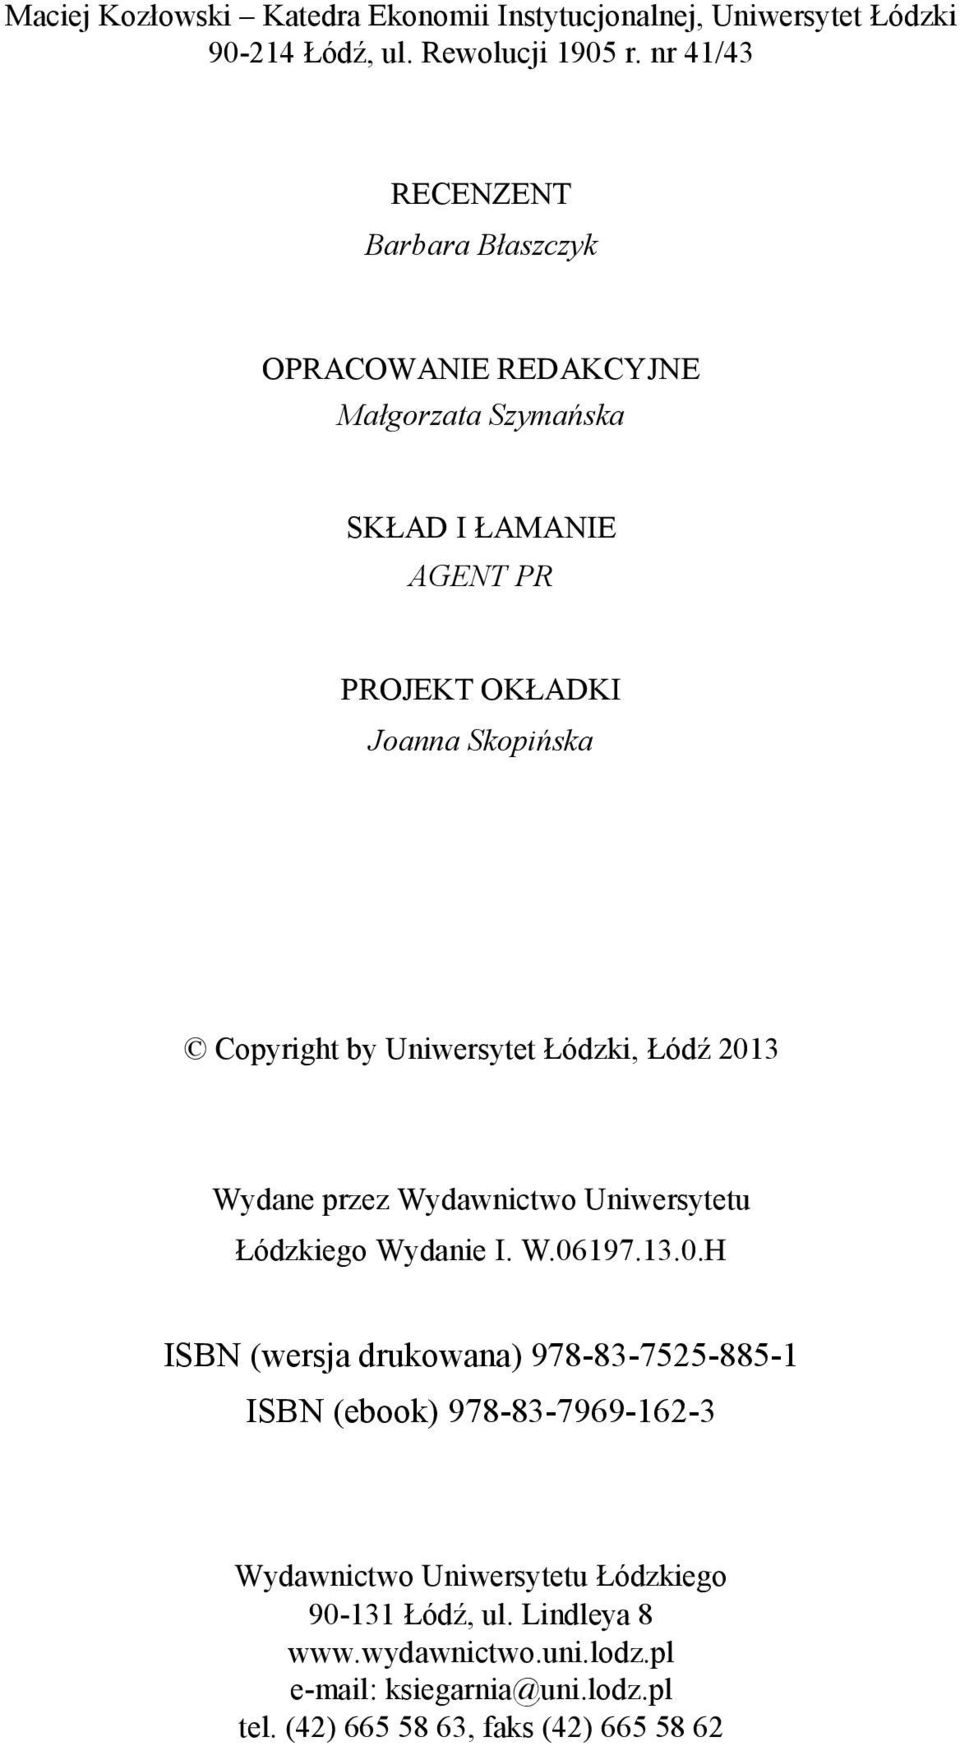 by Uniwersytet Łódzki, Łódź 2013 Wydane przez Wydawnictwo Uniwersytetu Łódzkiego Wydanie I W 06197 13 0 H ISBN (wersja drukowana) 978-83-7525-885-1